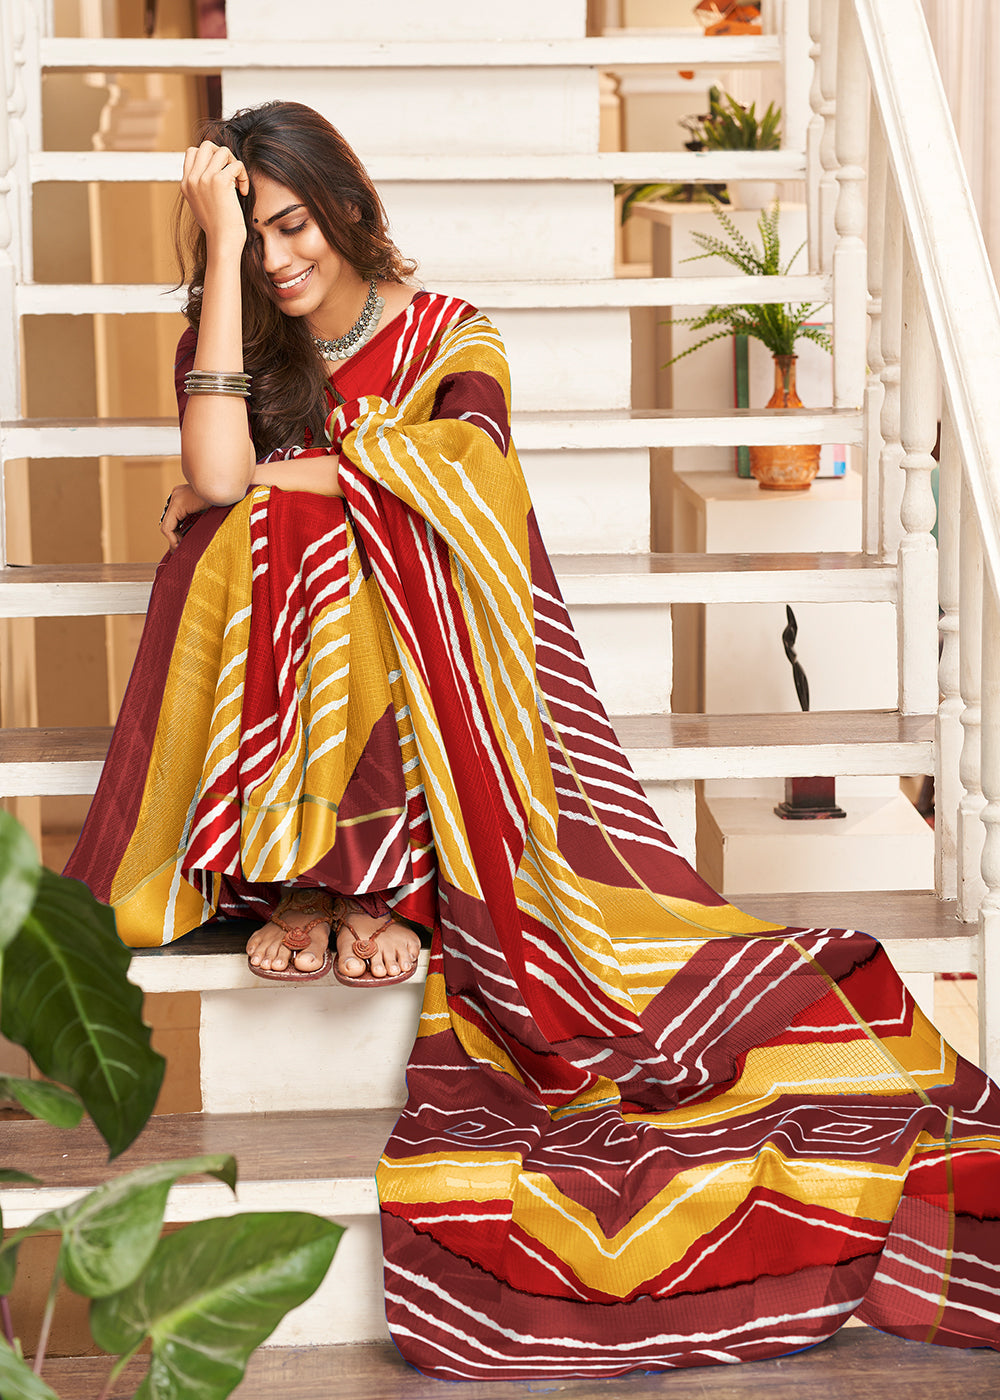 MySilkLove Merlot Red Yellow and Brown Cotton Saree With Leheriya Print